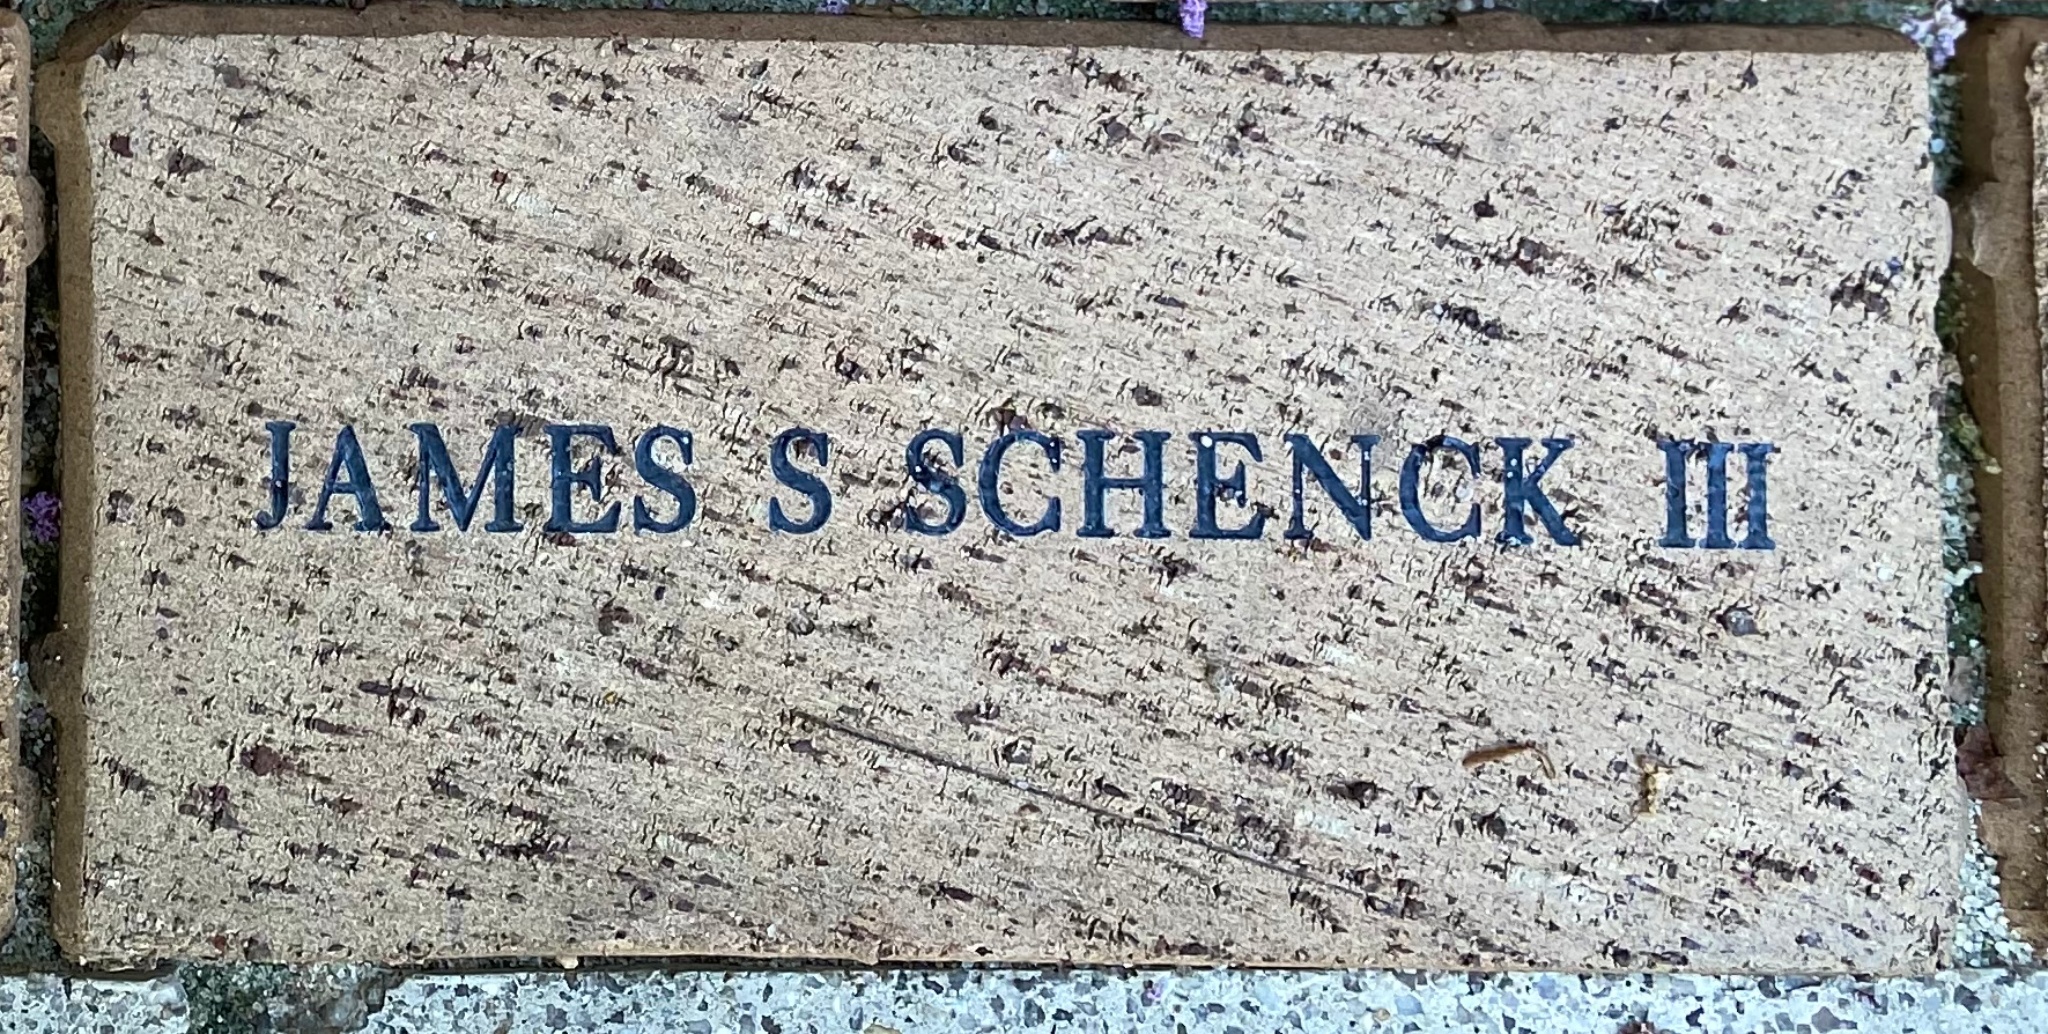 JAMES S. SCHENCK III